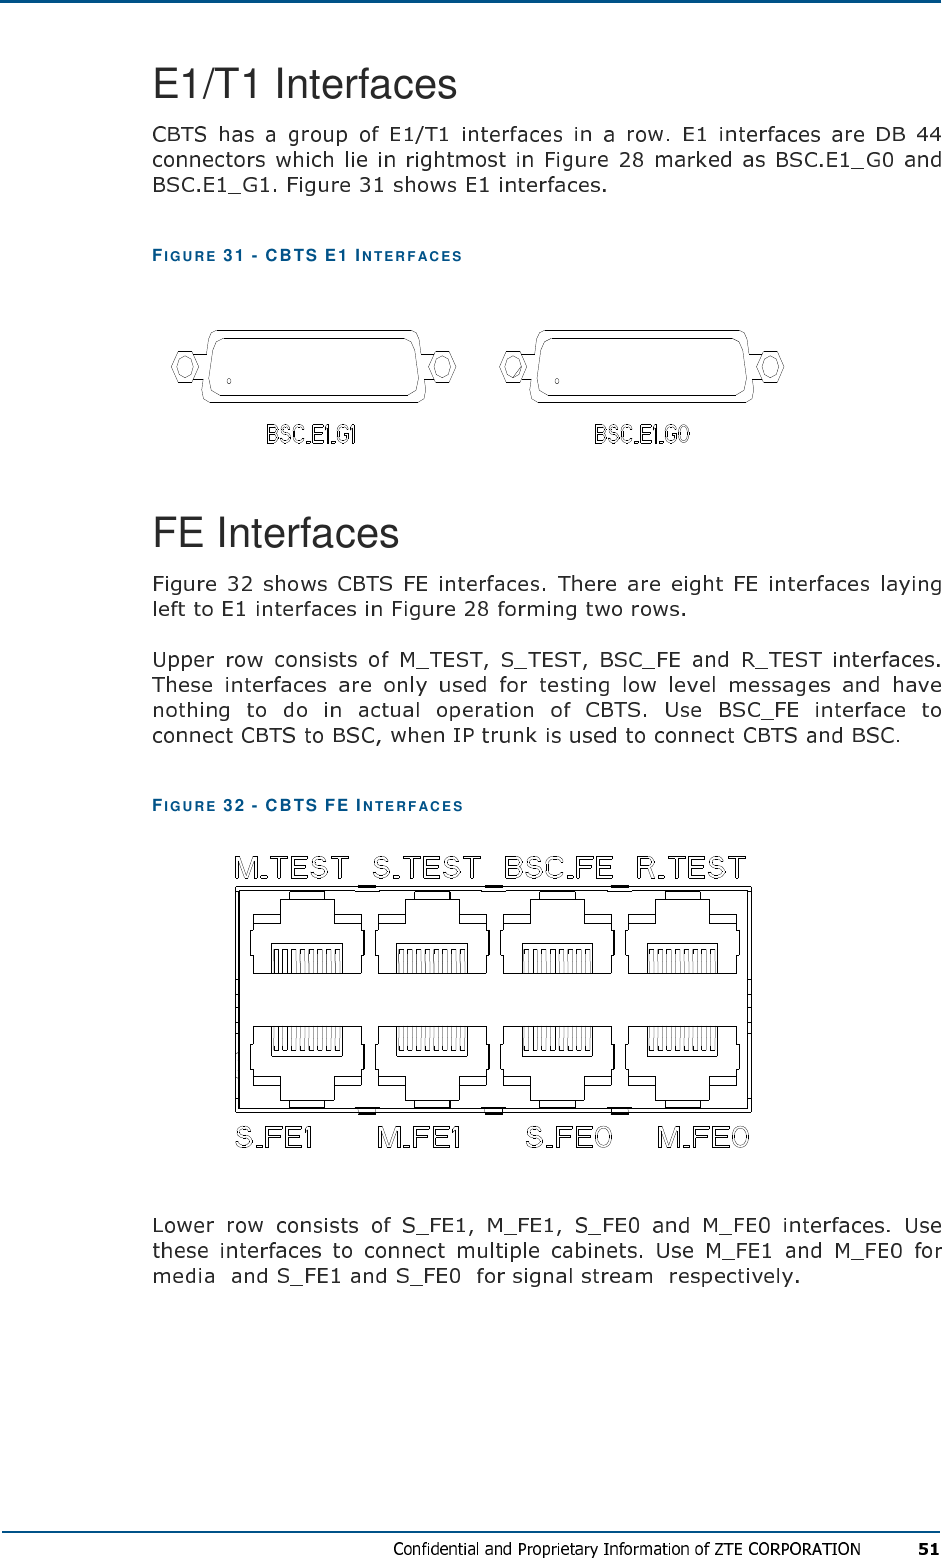 E1/T1 Interfaces FIG U R E   31 - CBTS E1 IN T E R F AC E S   FE Interfaces FIG U R E   32 - CBTS FE IN TE R F AC E S  